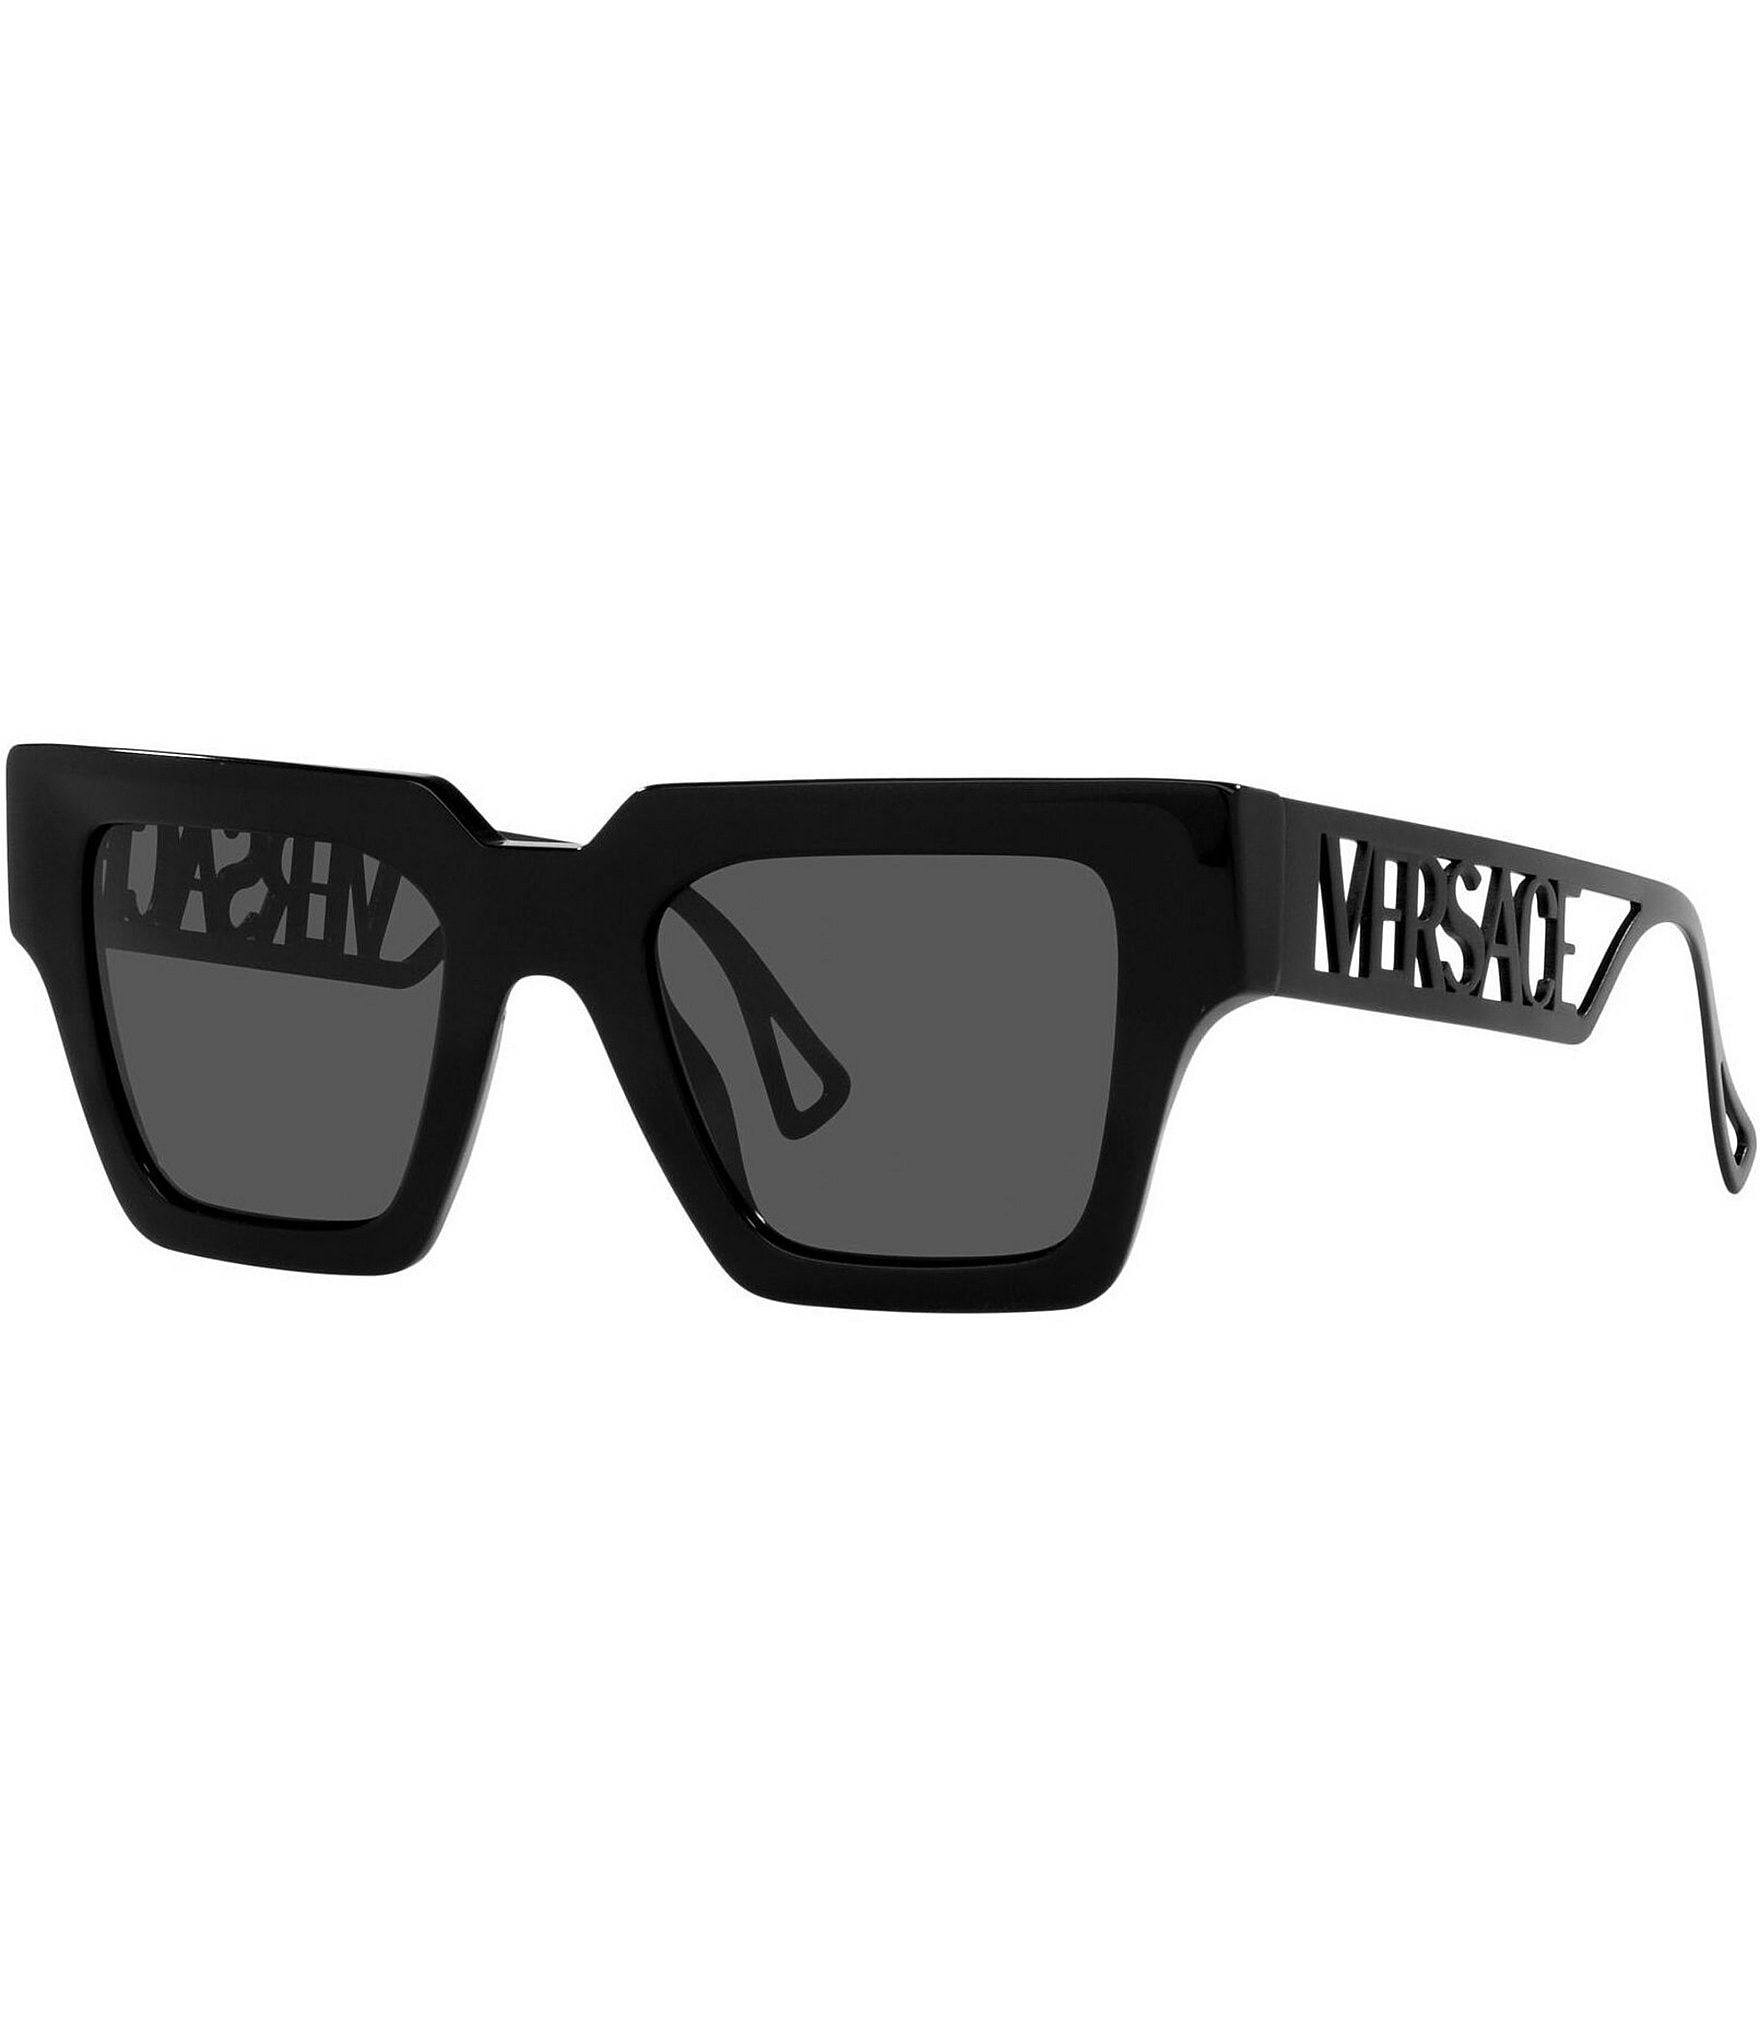 Versace Oversized Square-frame Sunglasses, Sunglasses, Lenses in Black